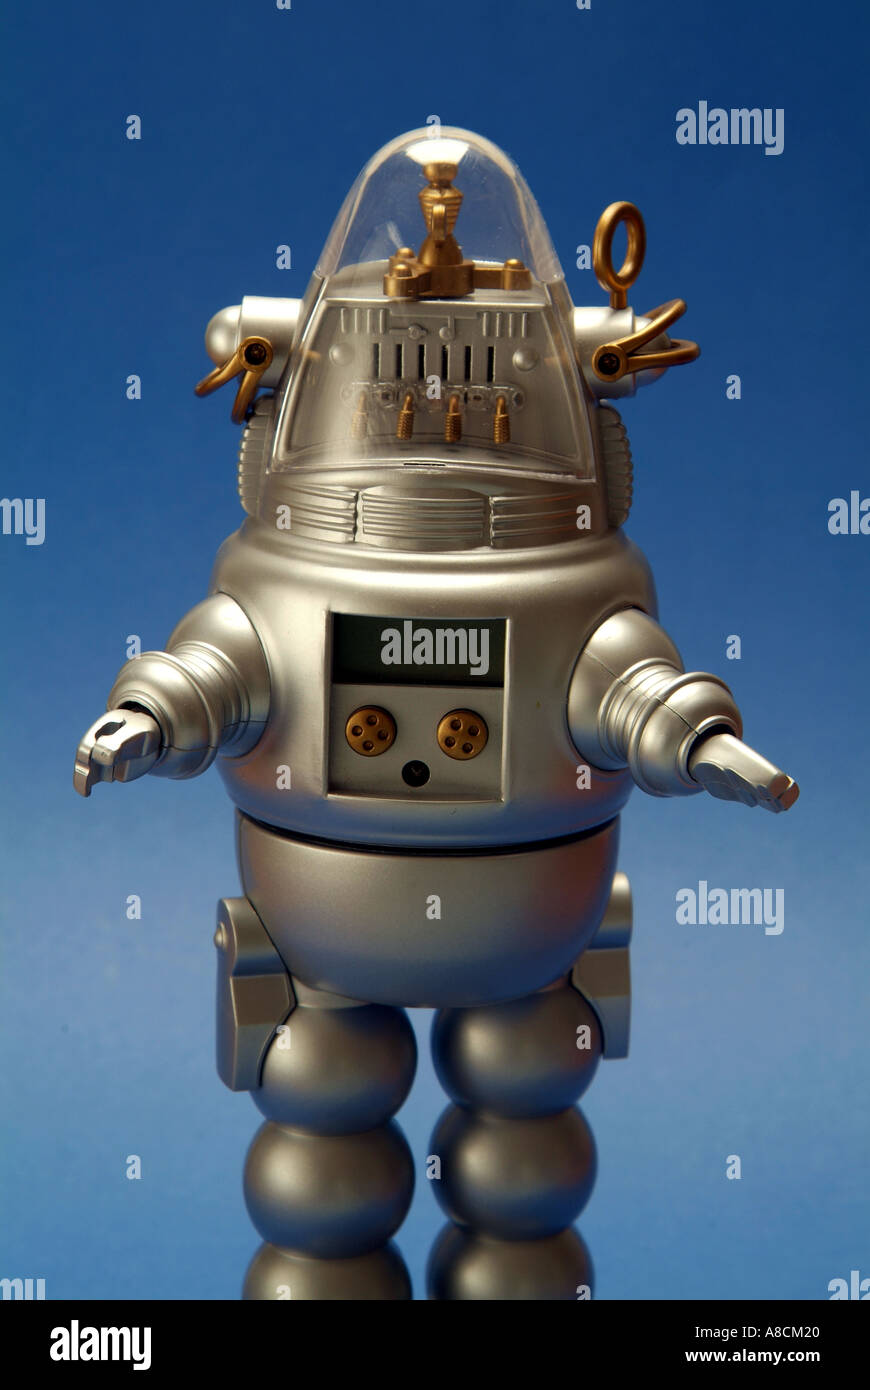 Kinder- kunststoff Spielzeug Roboter im futuristischen Stil von Robby der  Roboter aus Film Forbidden Planet Stockfotografie - Alamy